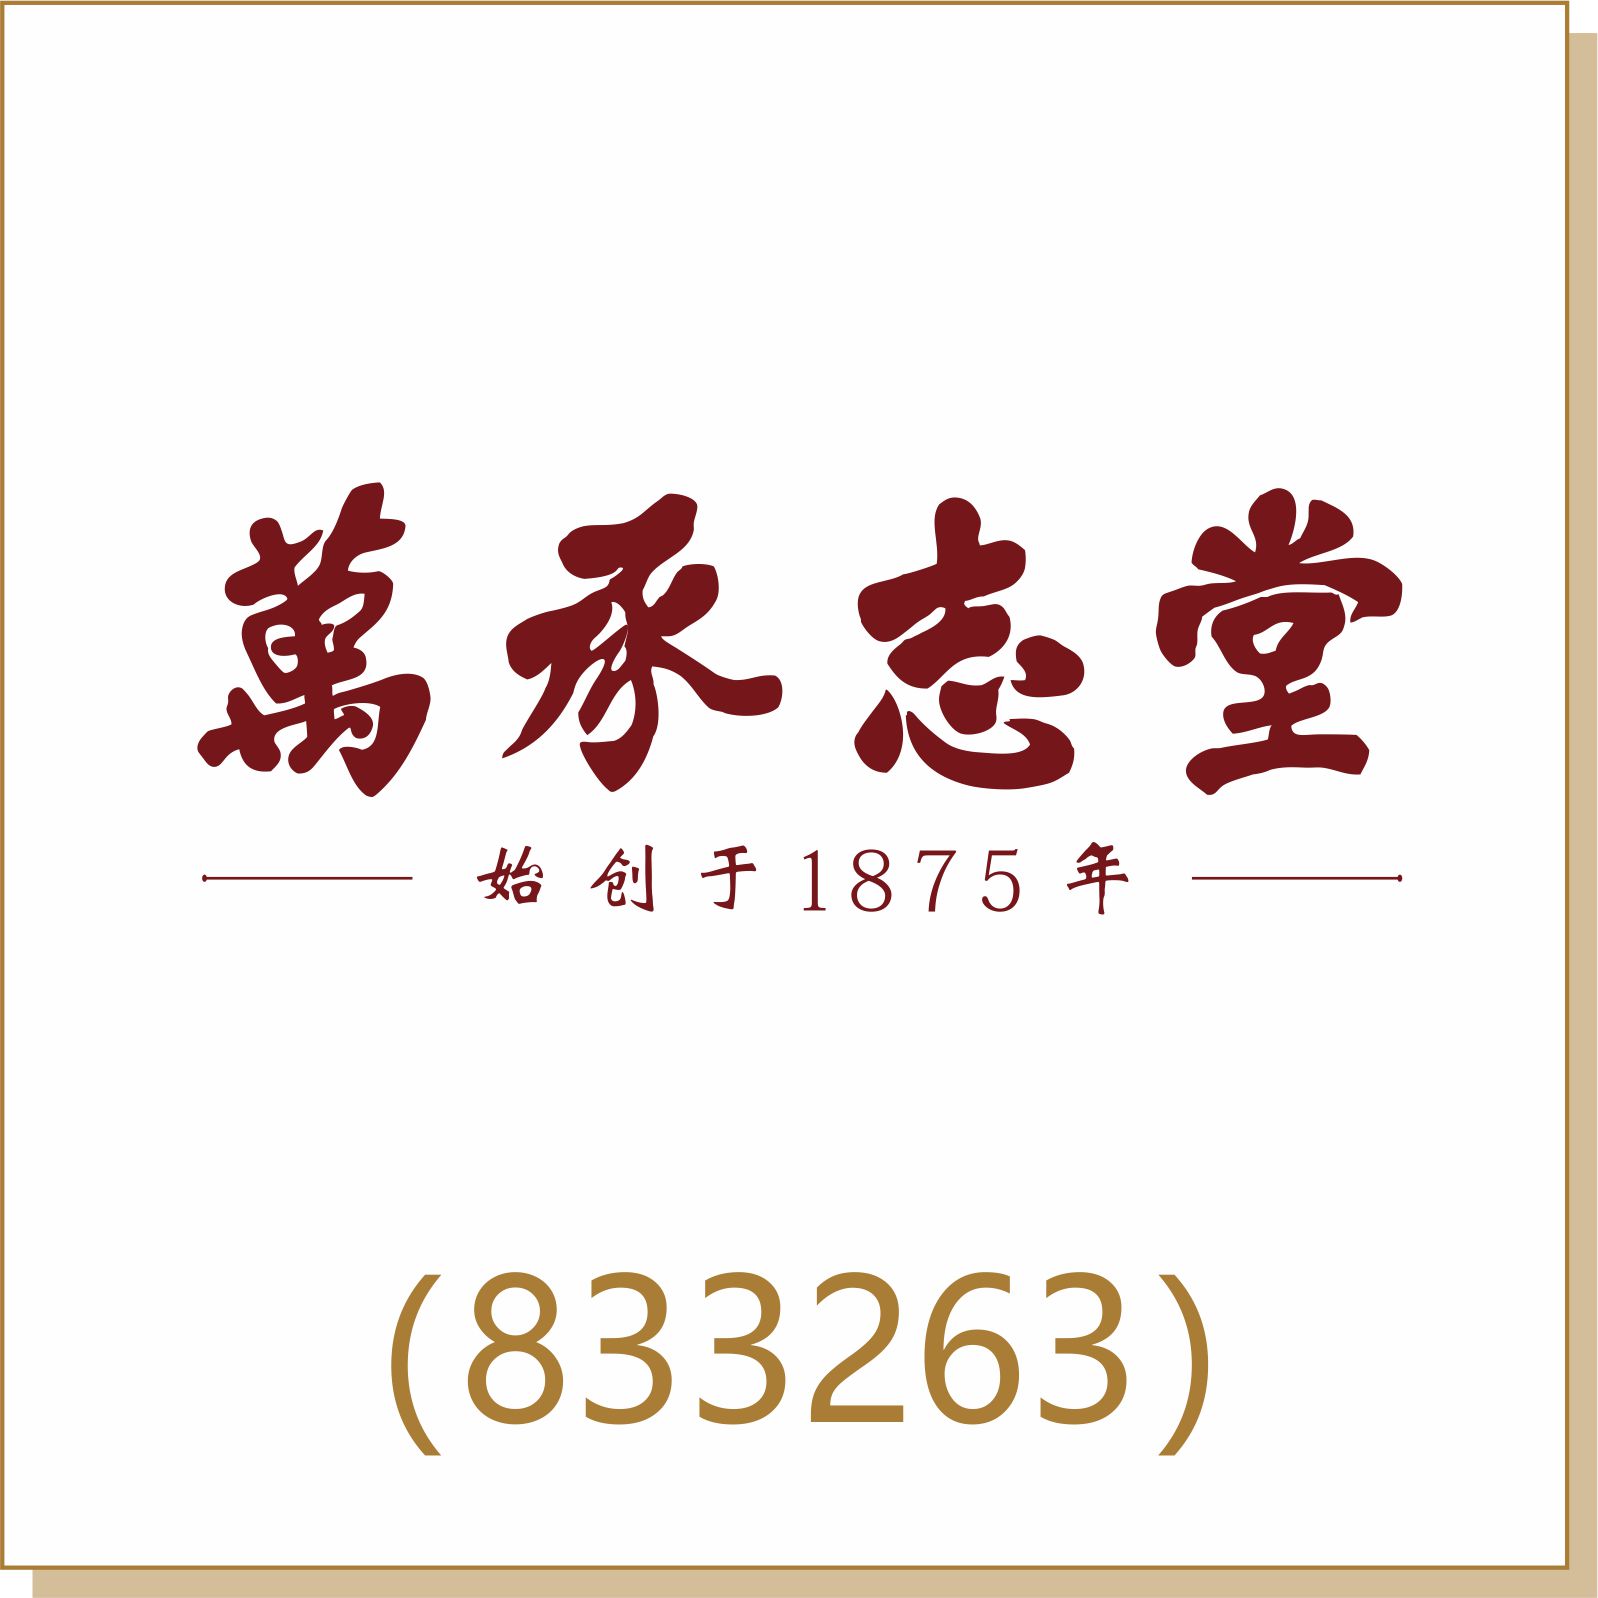 万承志堂(833263)